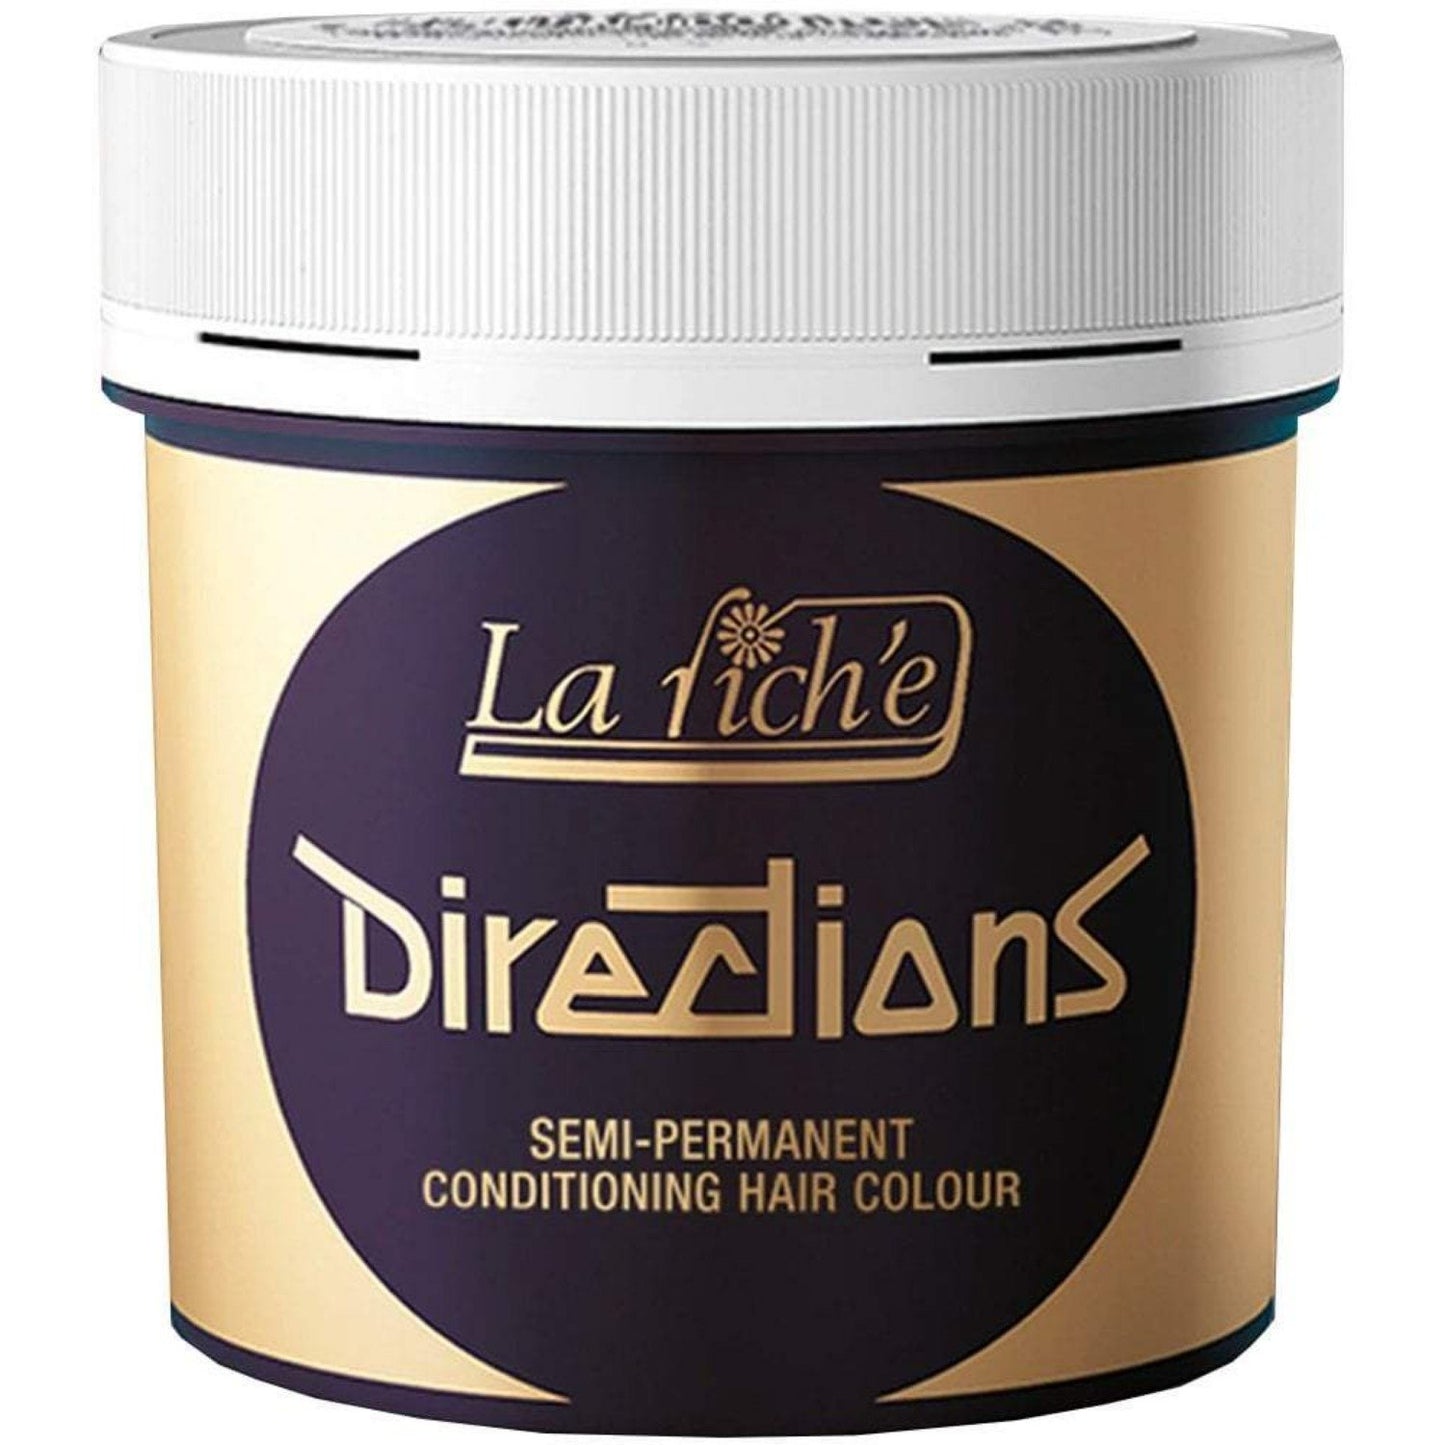 La Riche Directions Vegan Semi Permanent Hair Colour - 100ml - Deep Purple (SHOP)